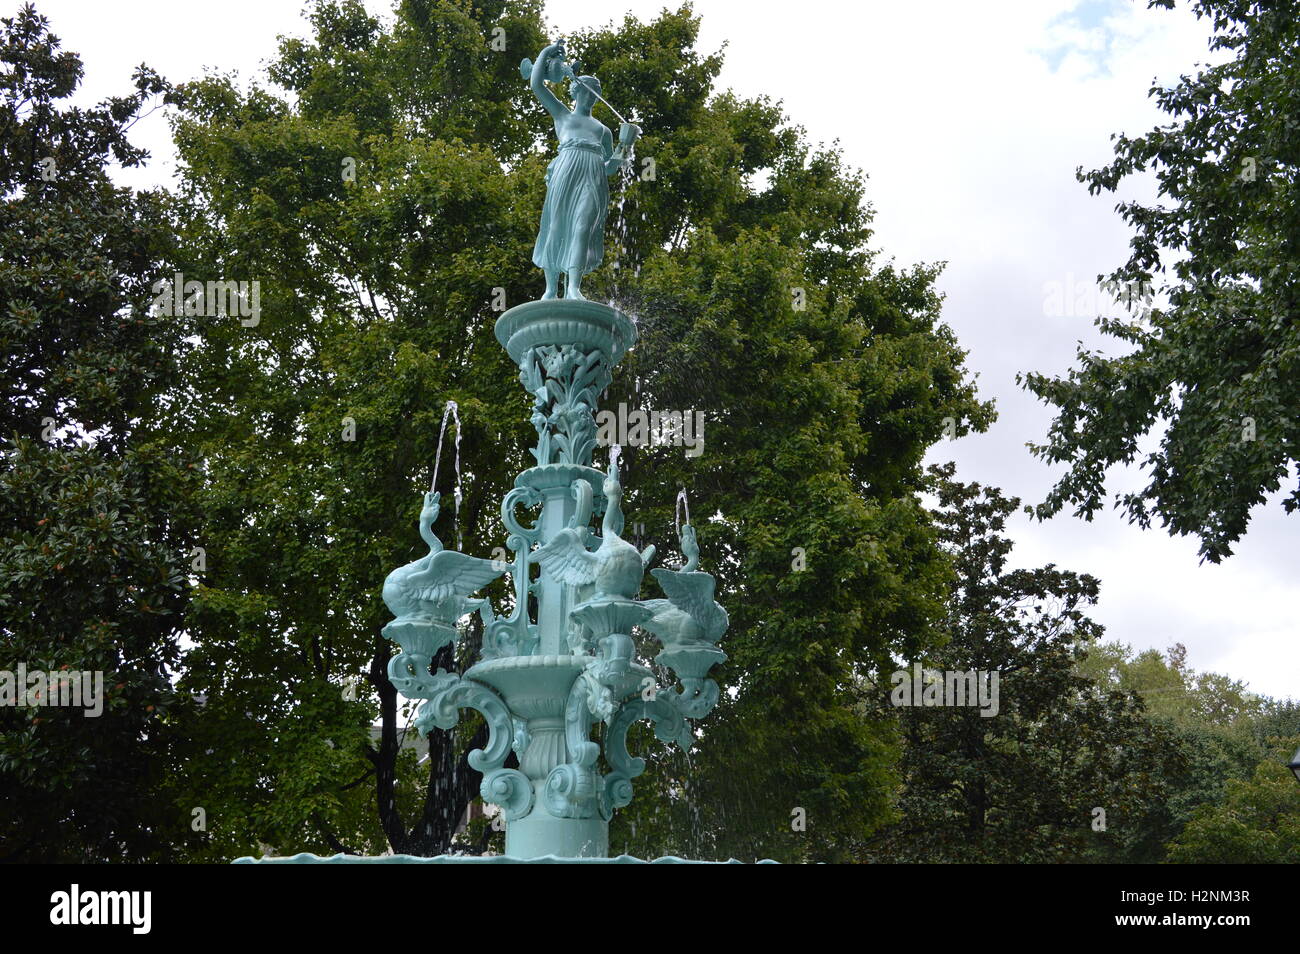 La fontaine dans le parc La Fontaine, Chestertown, Maryland. La fontaine dispose d'Héra, la déesse de la jeunesse, les lions et les cygnes. Banque D'Images